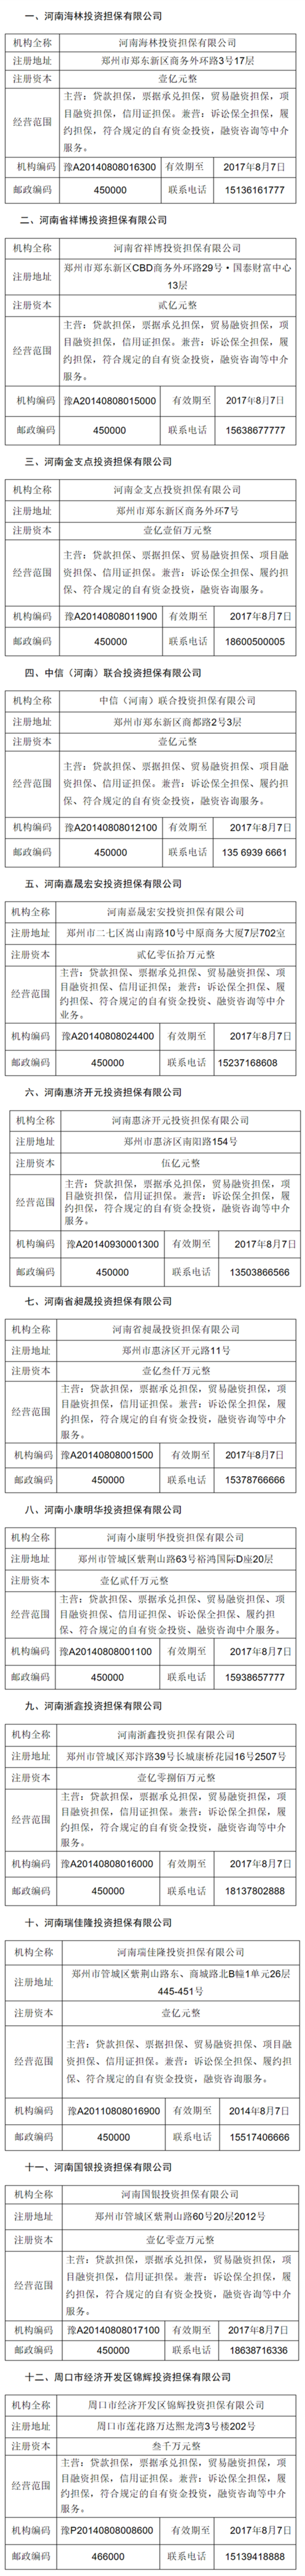 【河南在线-文字列表】河南12家担保公司经营许可证被注销 （名单）